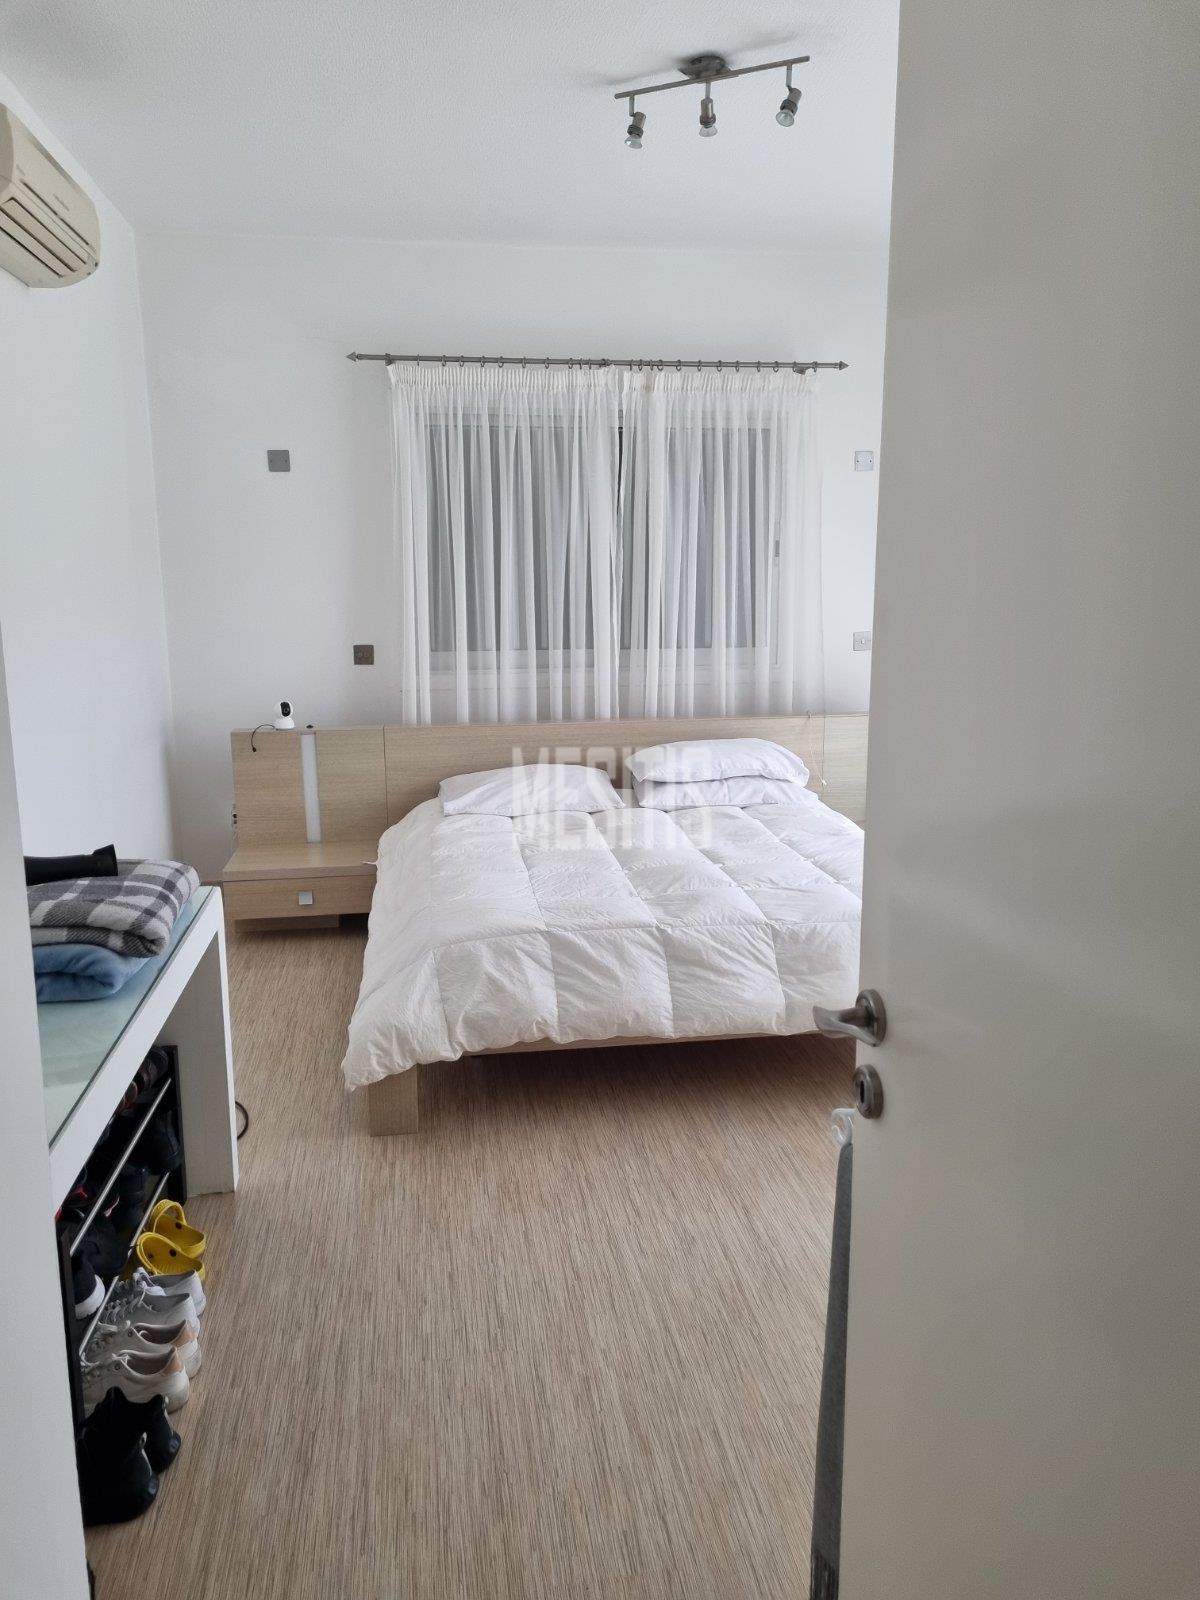 3 Βedroom Τop Floor Apartment For Sale In A Prime Location With Large Spaces And Incredible Aesthetics Αnd Views To All Of Nicosia #30861-12